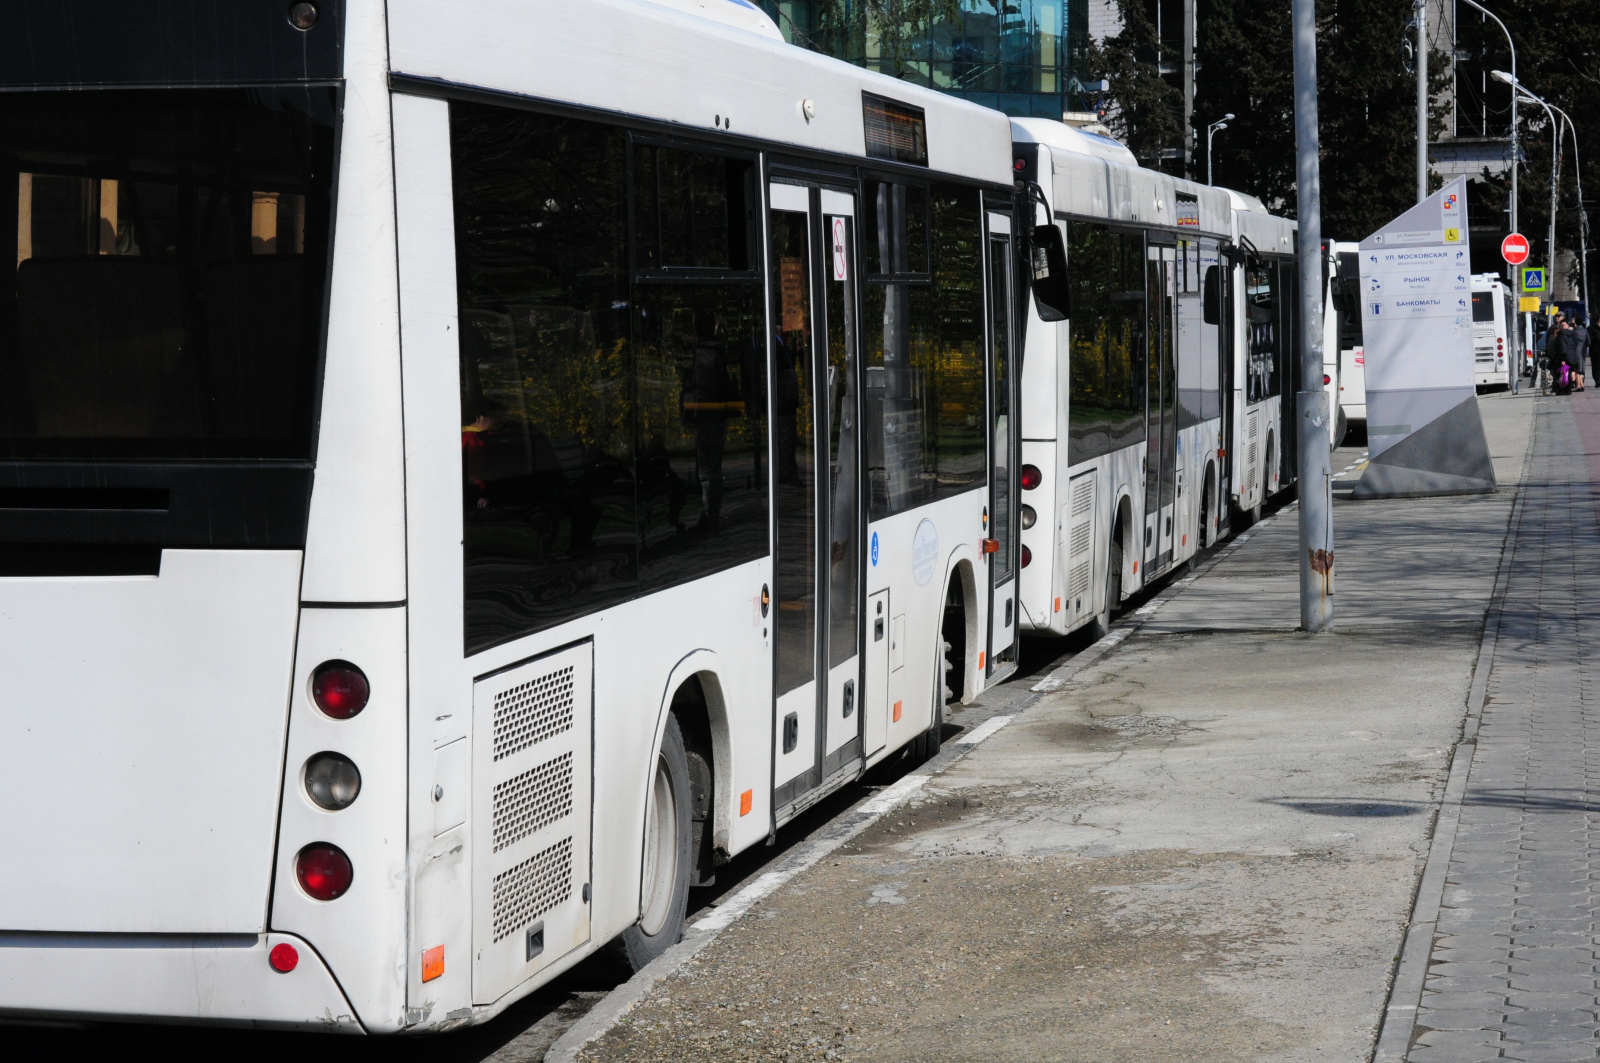 Продуктовая фирма будет обслуживать три автобусных маршрута в Ростове